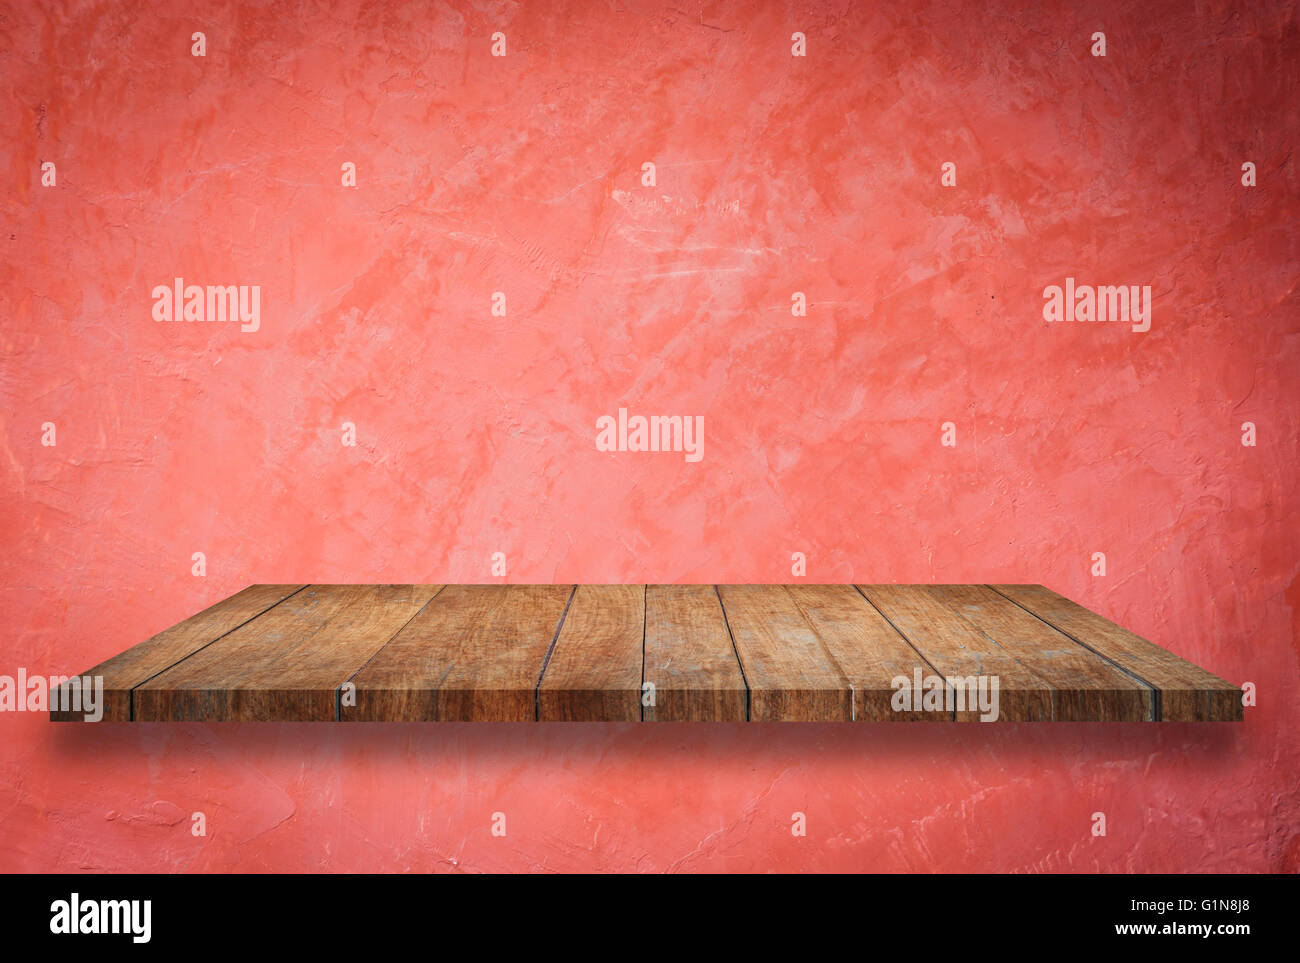 Perspectiva de vacío superior en estante de madera roja de fondo de pared Foto de stock